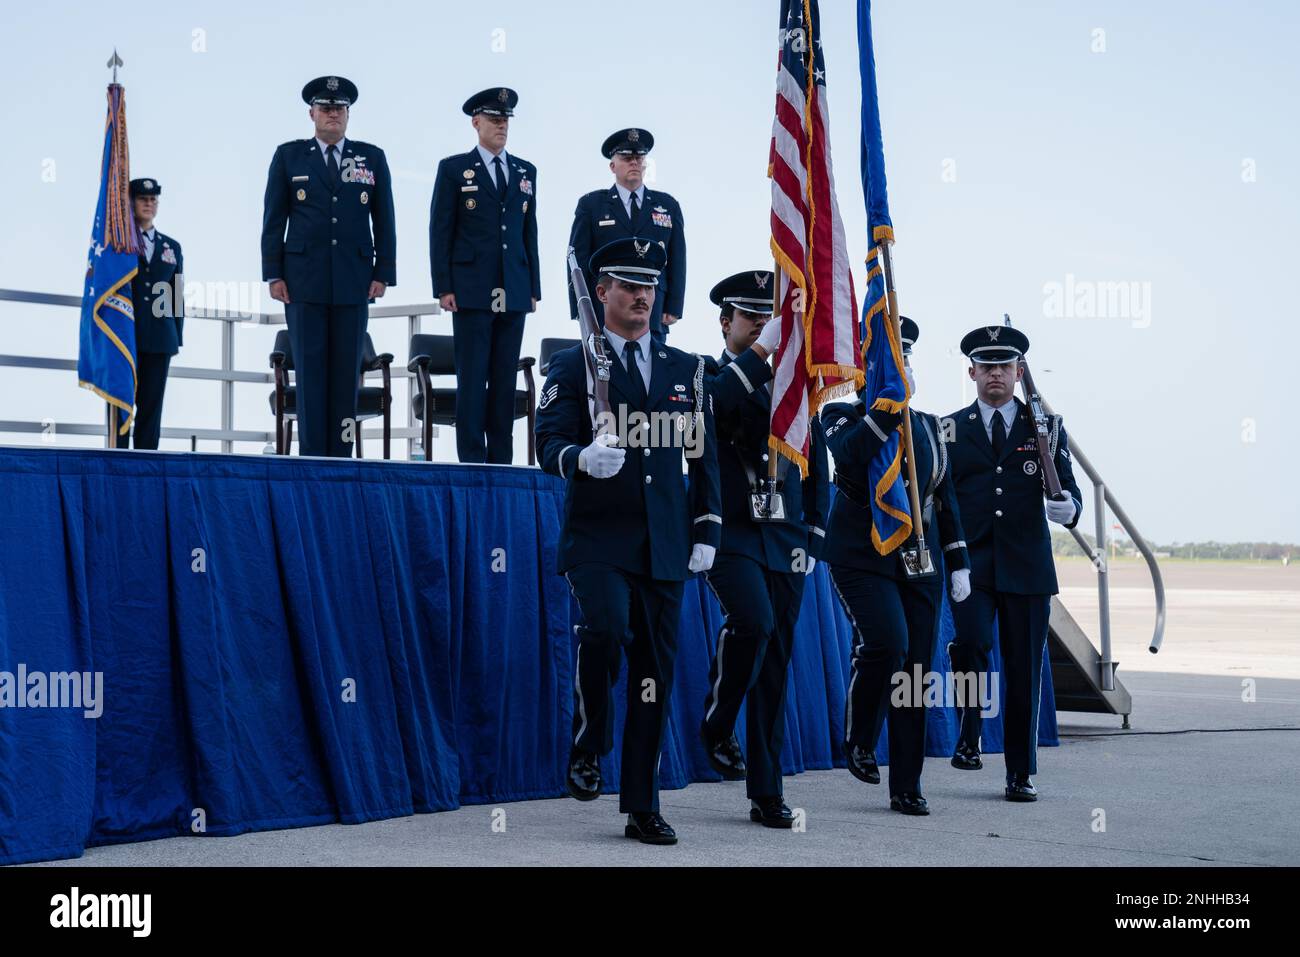 Les membres de la Garde d'honneur de l'escadre de ravitaillement aérien de 6th présentent les couleurs de la cérémonie de passation de commandement de l'Armée de l'air de 6th à la base aérienne de MacDill, en Floride, au 29 juillet 2022. Une équipe de couleurs de la Force aérienne se compose de quatre membres du personnel de hauteur similaire, dont un porteur des couleurs nationales, un porteur du drapeau de la Force aérienne et deux gardes de carabine. Banque D'Images